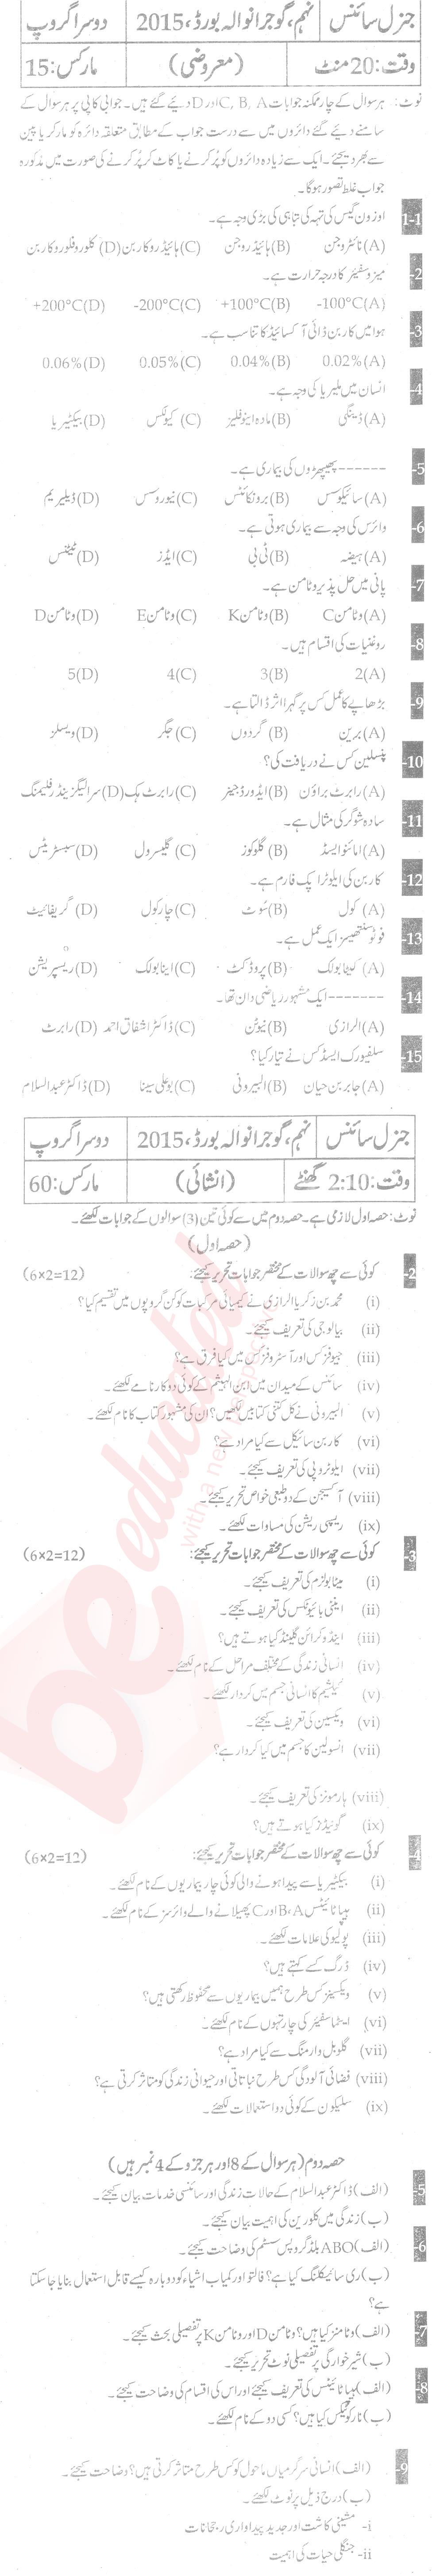 General Science 9th Urdu Medium Past Paper Group 2 BISE Gujranwala 2015